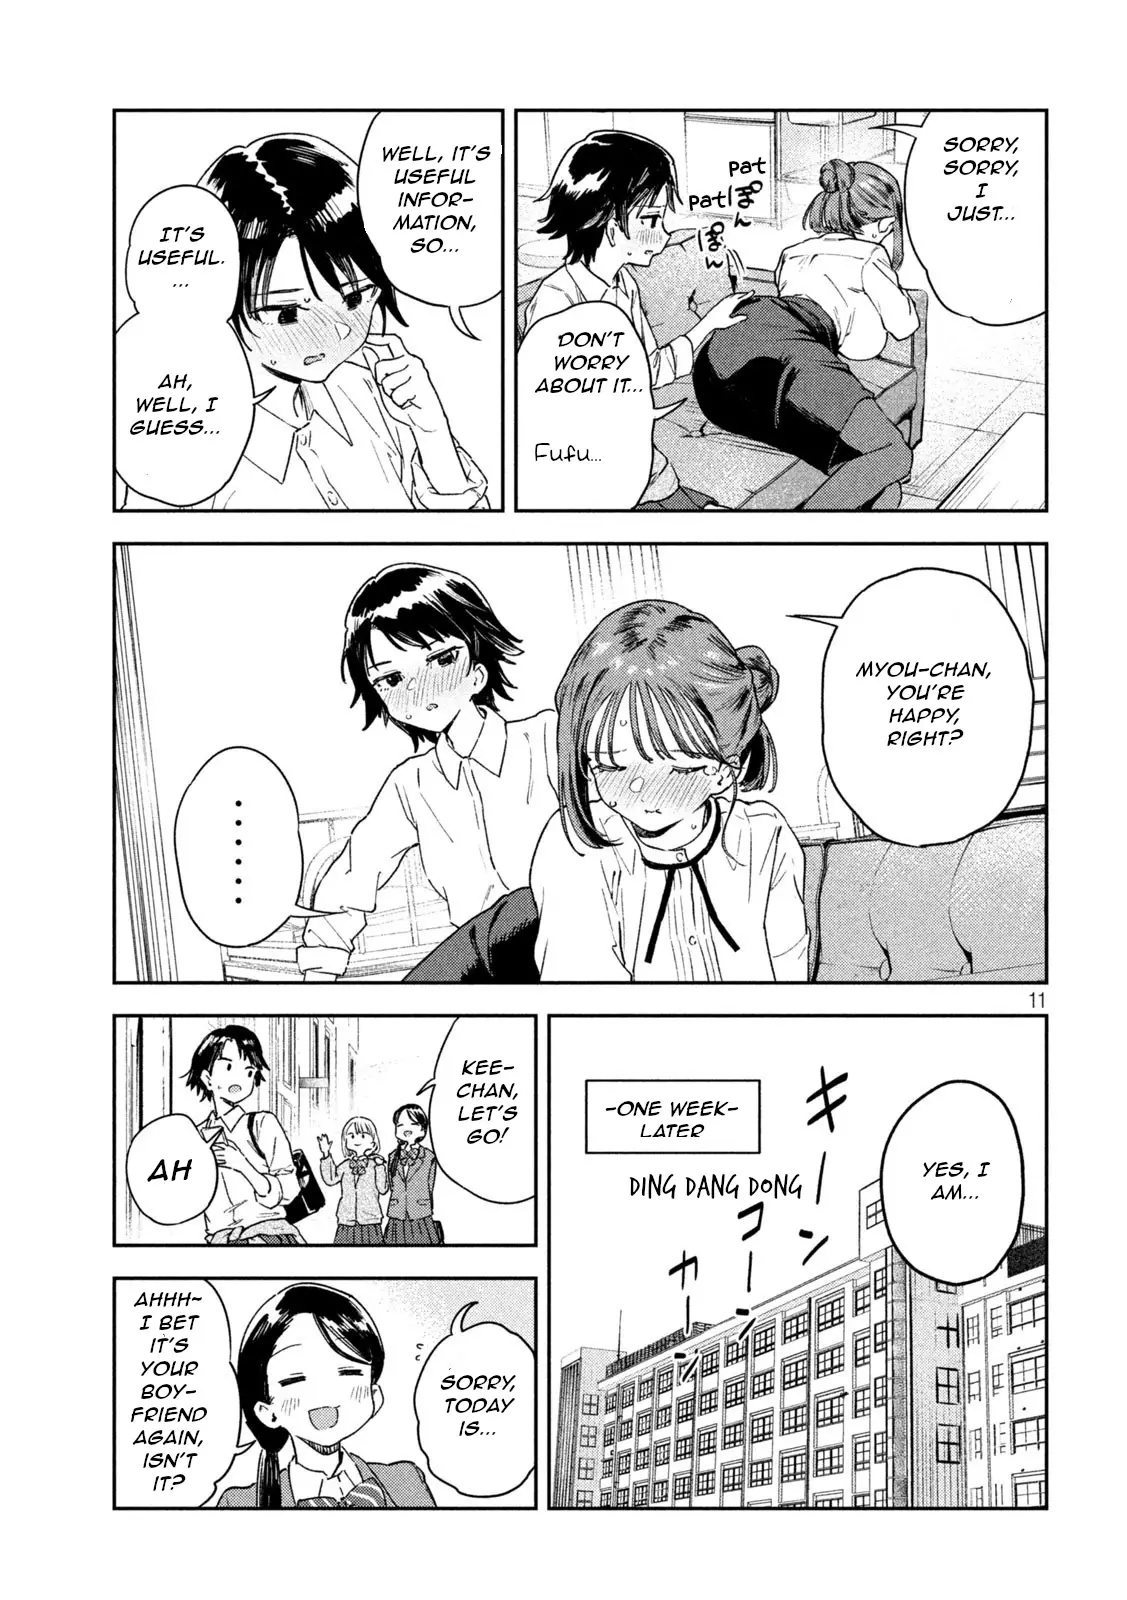 Miyo-Chan Sensei Said So - 6 page 11-78ffd0e3